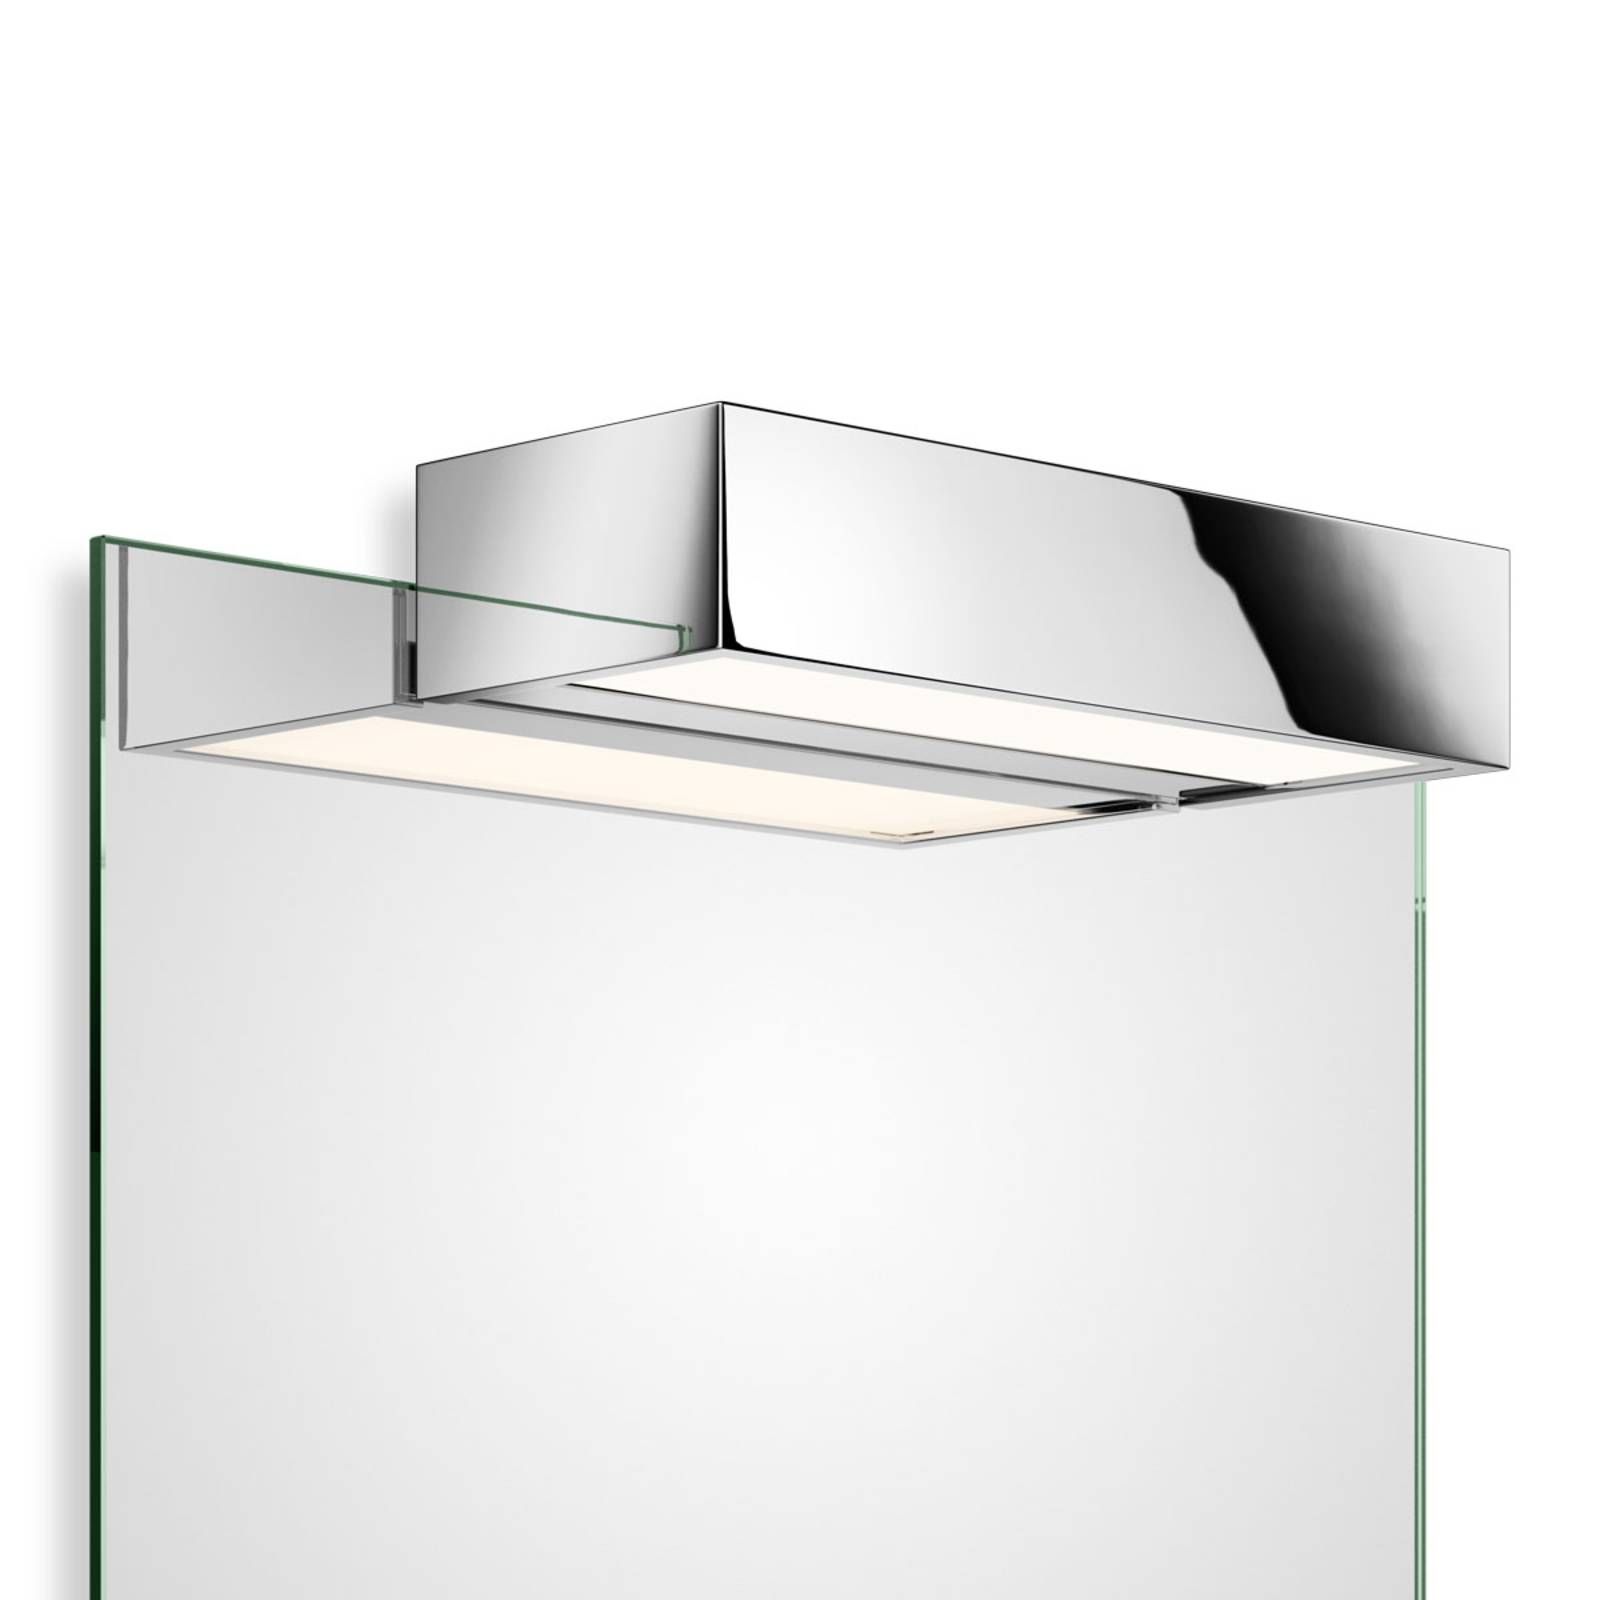 Decor Walther Box 1-15 N zrkadlové LED 2 700 K, Kúpeľňa, kov, sklo, 18.4W, L: 15 cm, K: 5cm